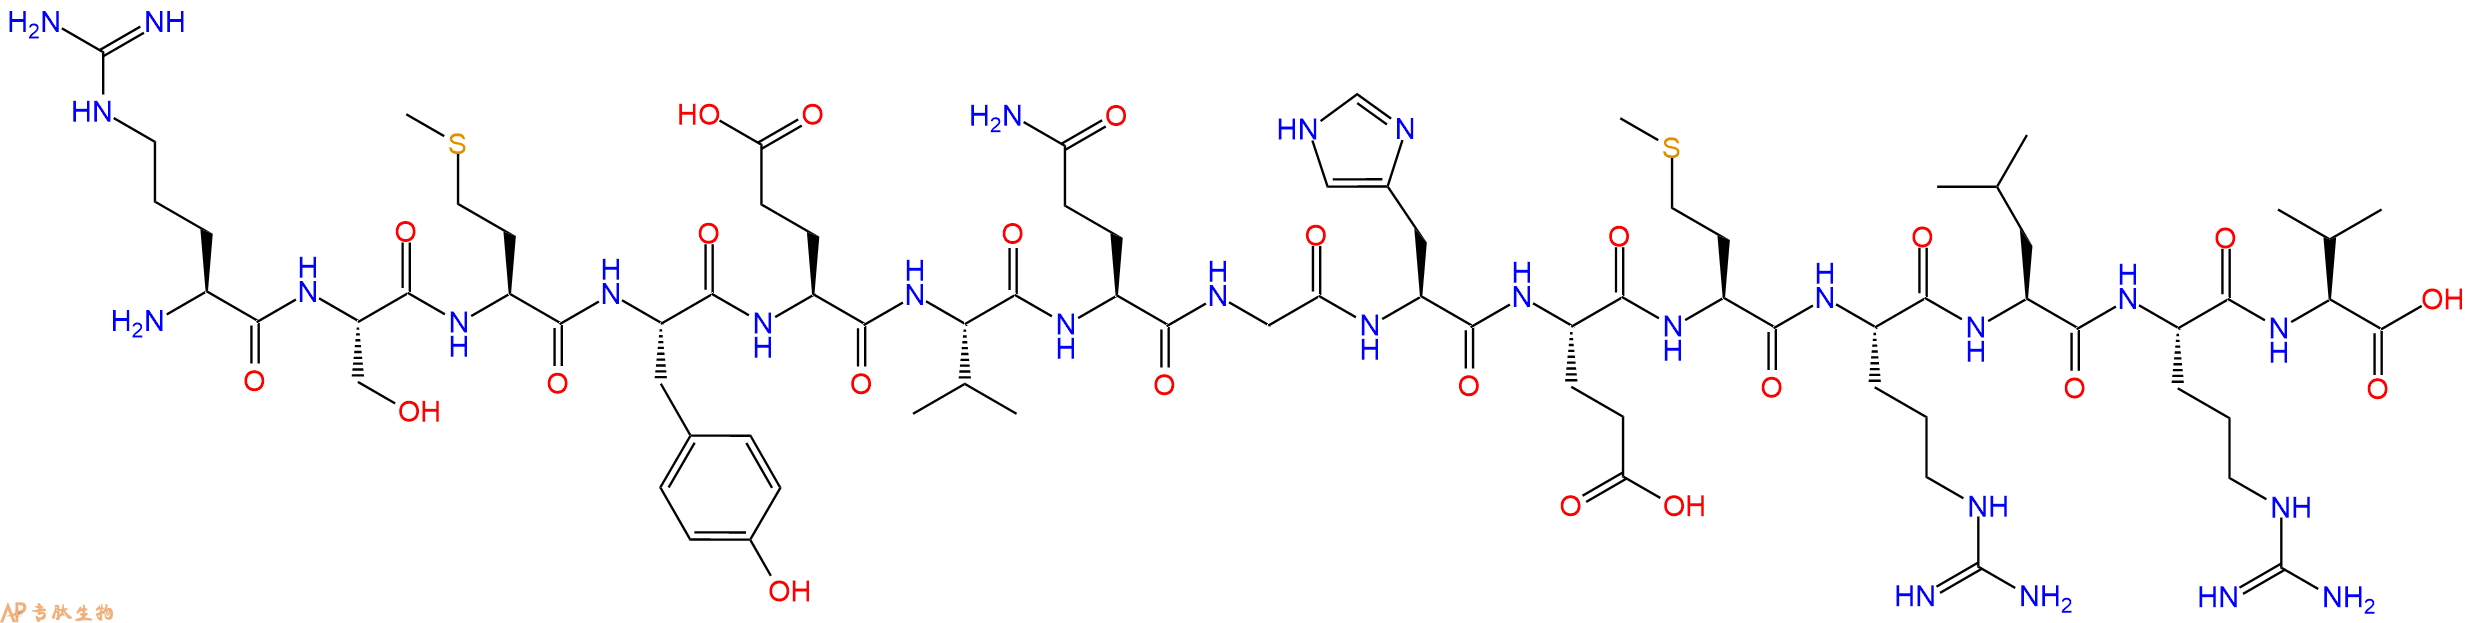 多肽RSMYEVQGHEMRLRV的参数和合成路线|三字母为Arg-Ser-Met-Tyr-Glu-